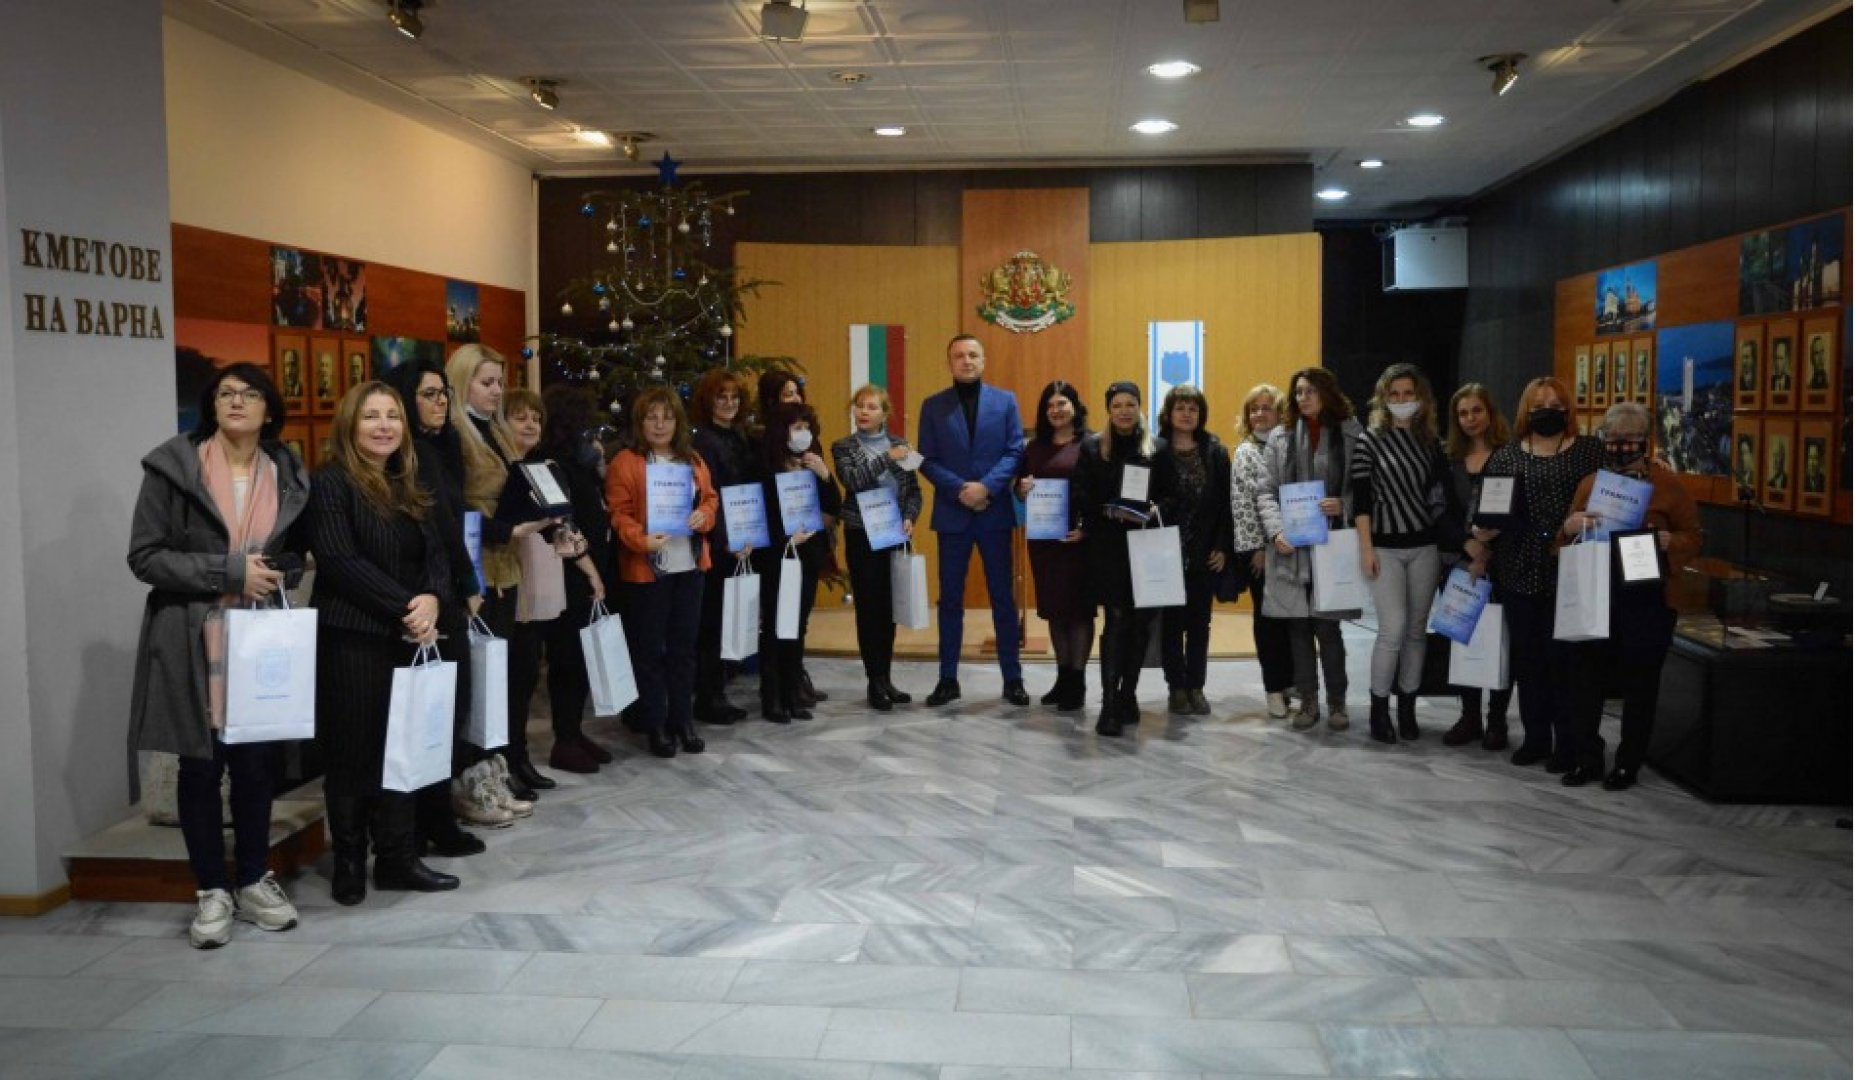 Кметът на Варна Иван Портних връчи наградите на отличените. Снимки Община Варна